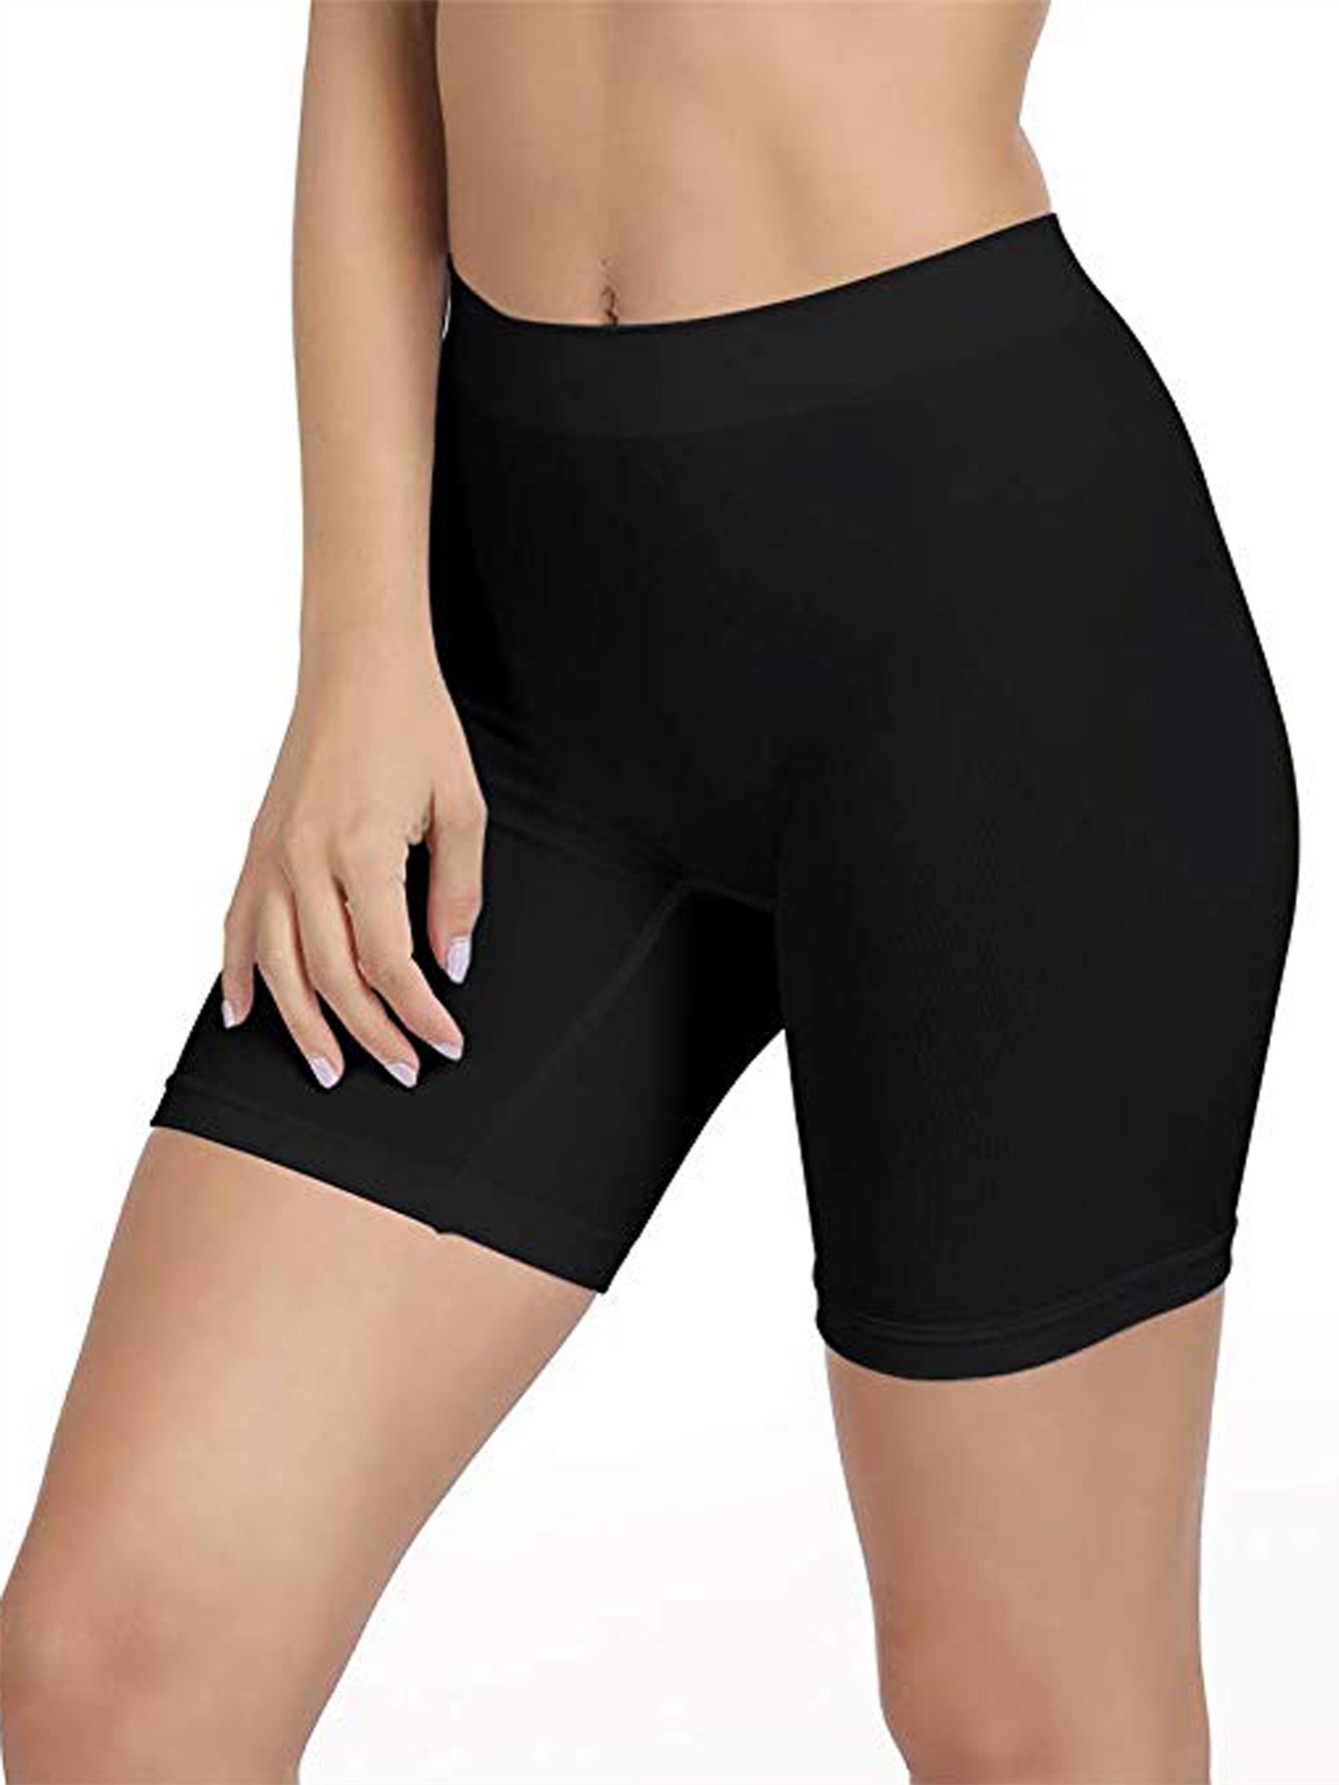 Slip Shorts Women Comfortable Seamless Smooth Underwear Under